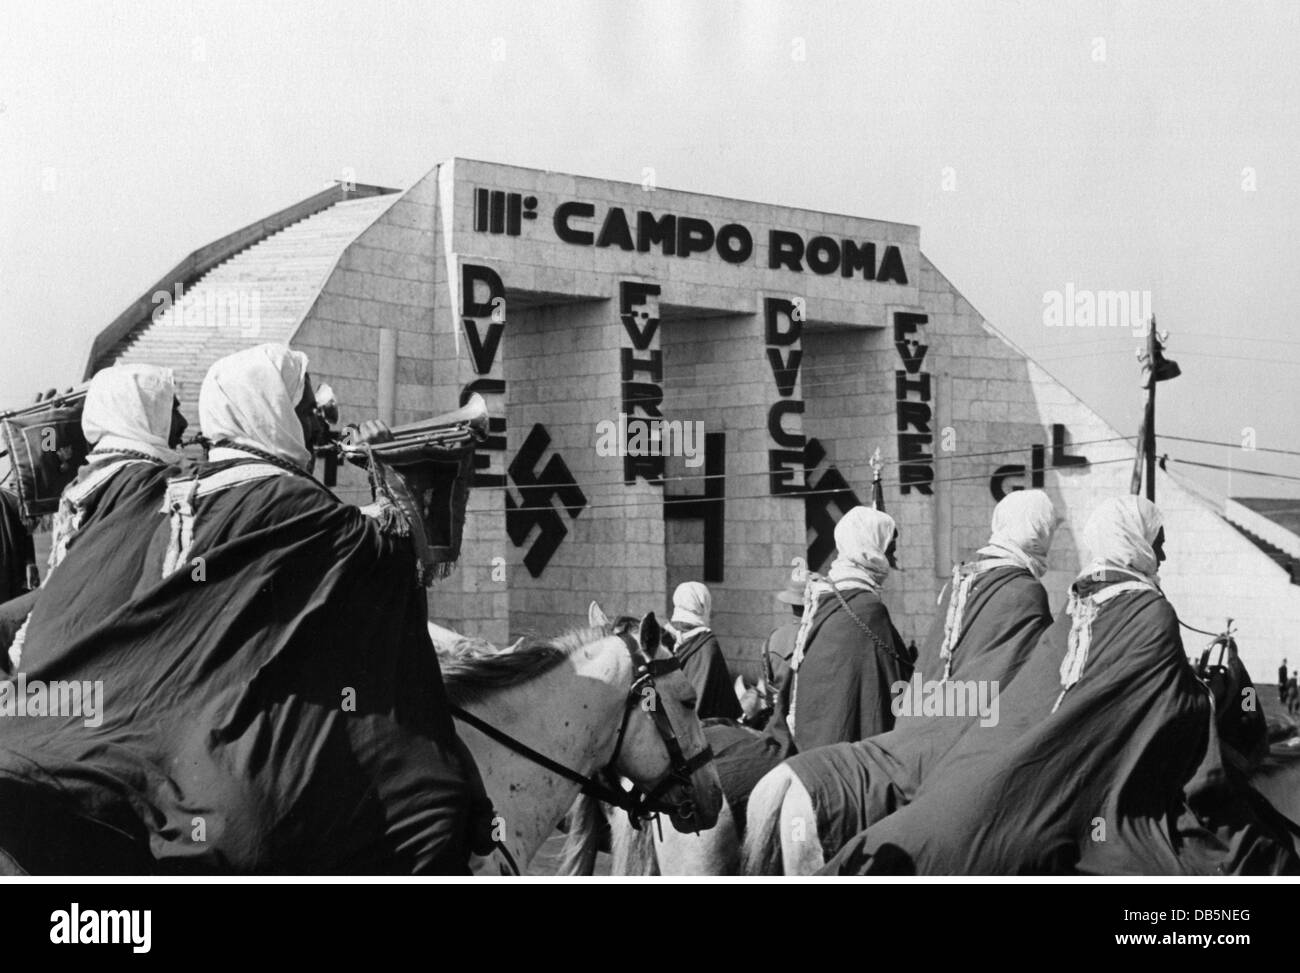 Geographie / Reisen, Italien, Politik, Faschismus, Truppen aus den italienischen Kolonien in Afrika bei einer Parade auf Campo Roma, anlässlich eines Staatsbesuchs Adolf Hitlers in Rom, Mai 1938, Zusatzrechte-Clearences-nicht vorhanden Stockfoto